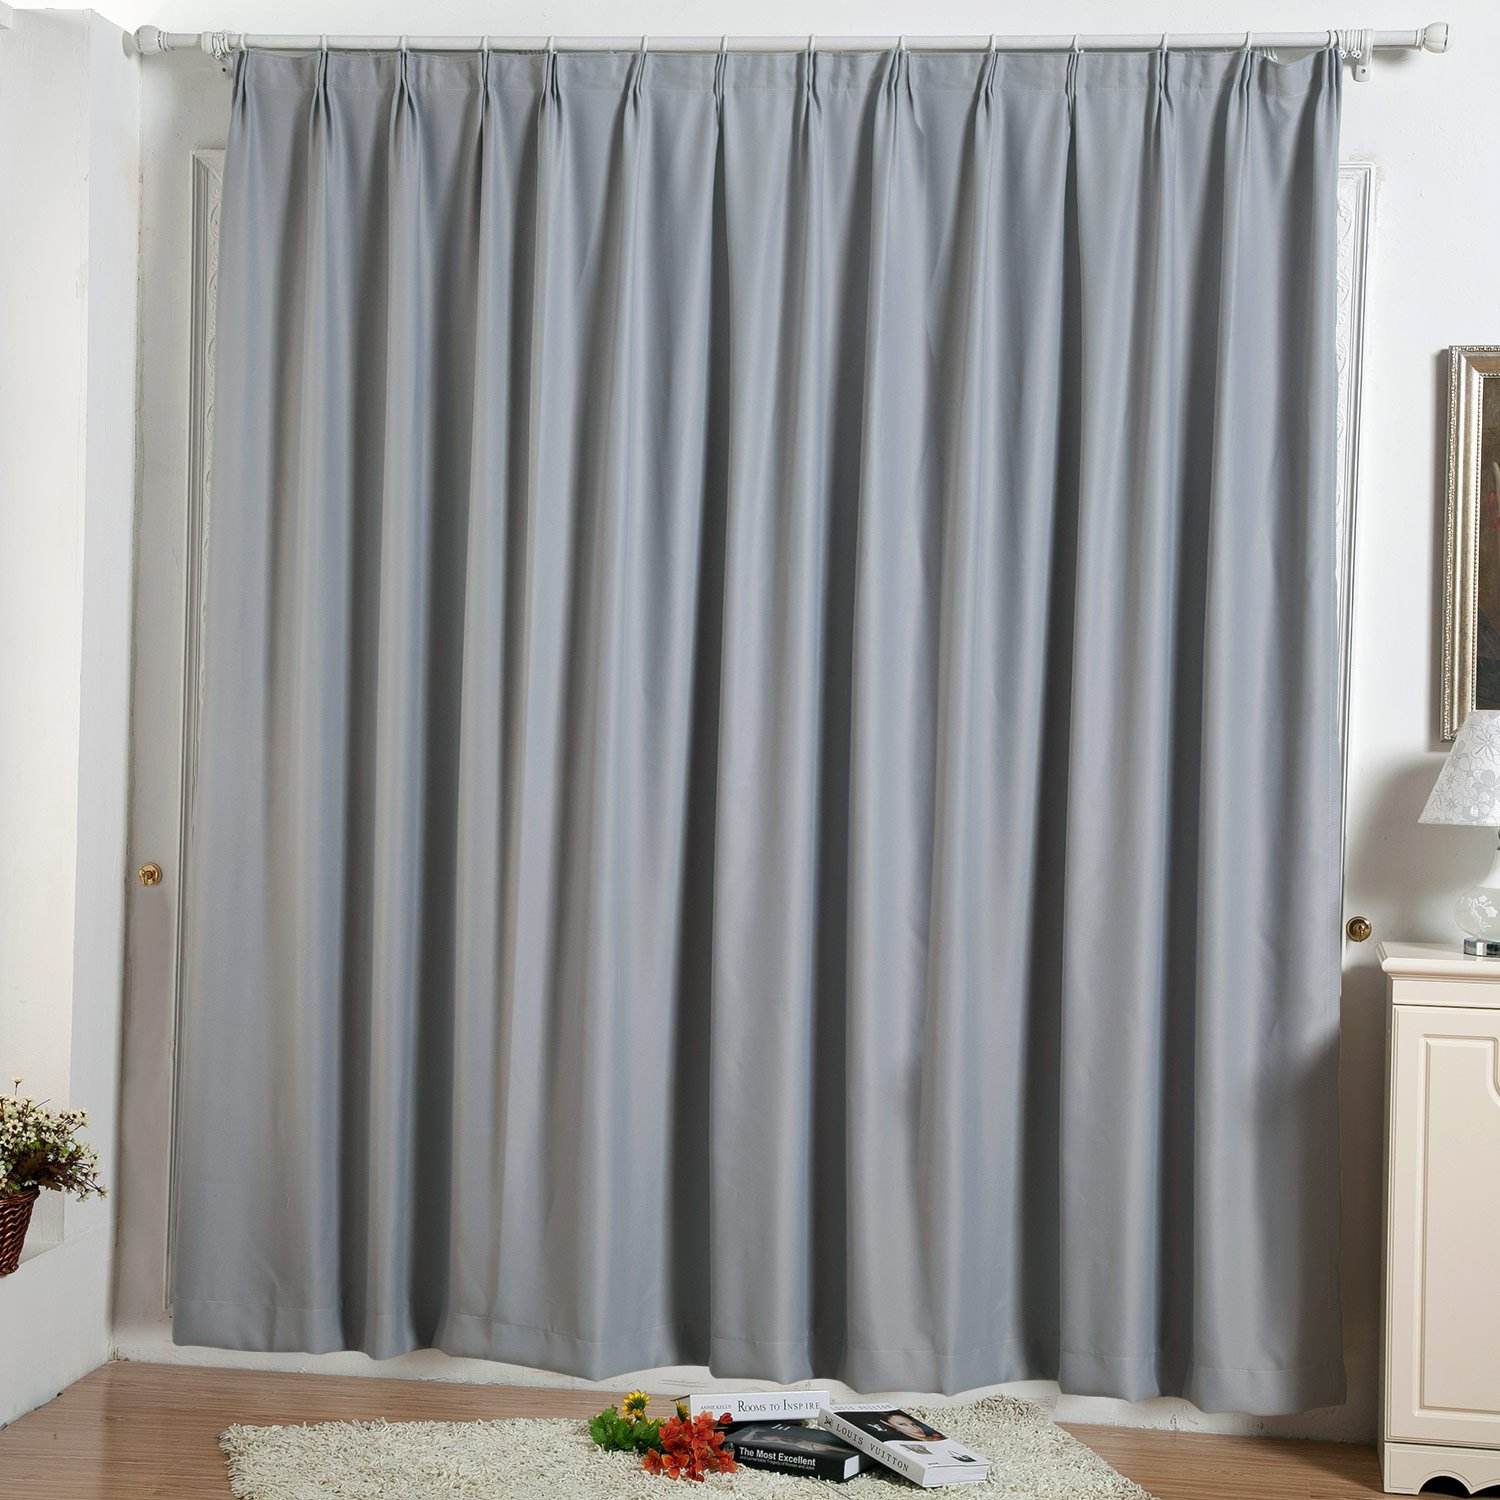 适当厚度的合肥窗帘能有效吸收来自外面的噪音